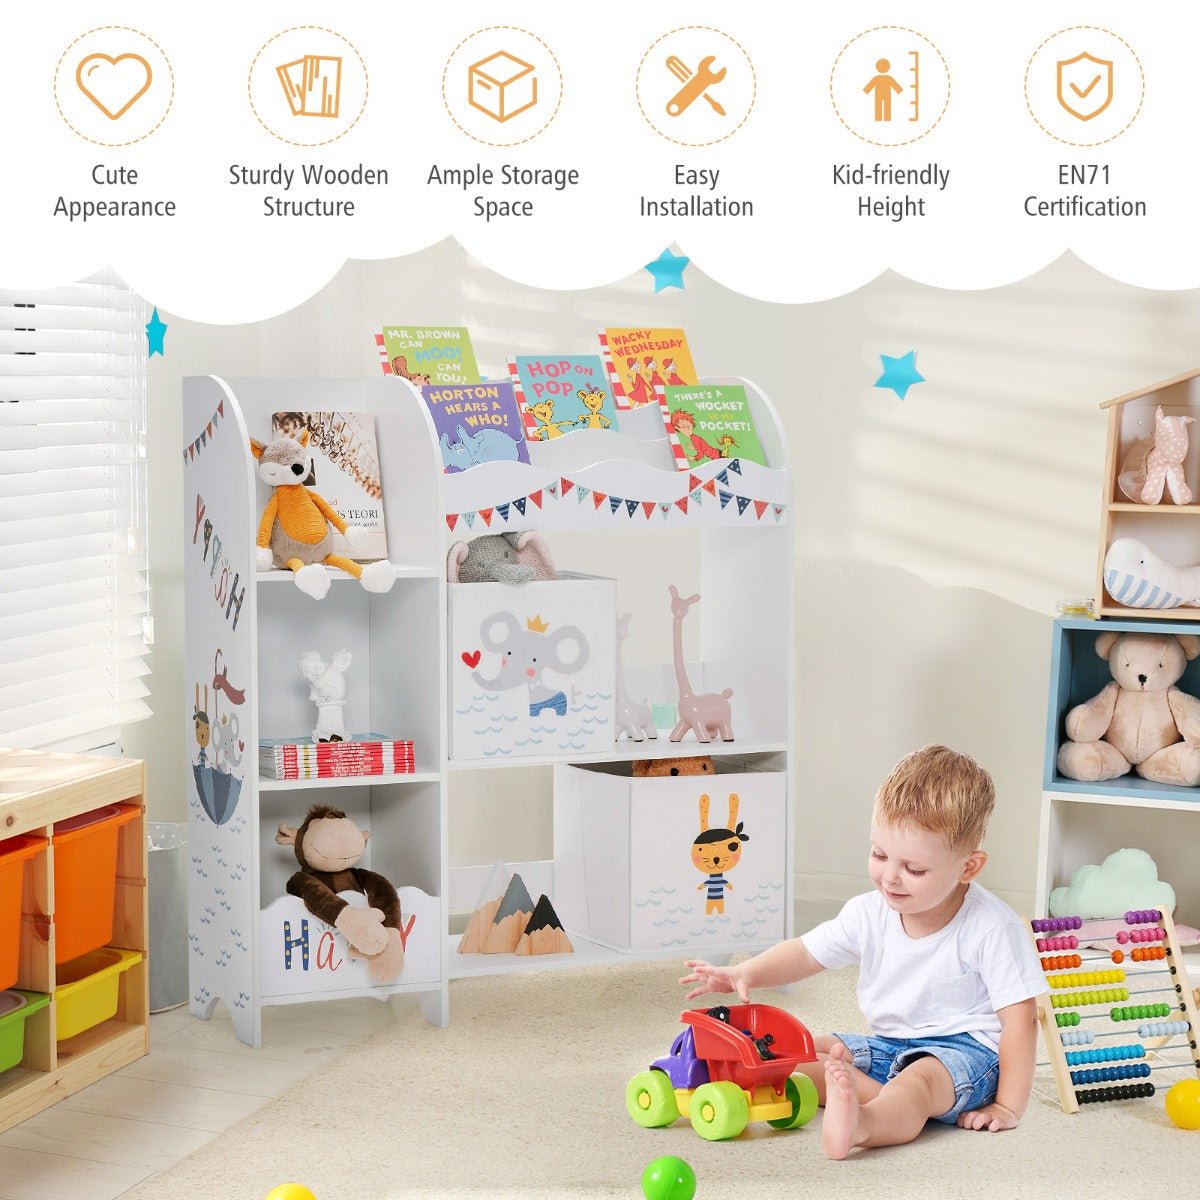 Display Shelf Toy Storage with Storage Bin - Keeping Kids Play Area Neat